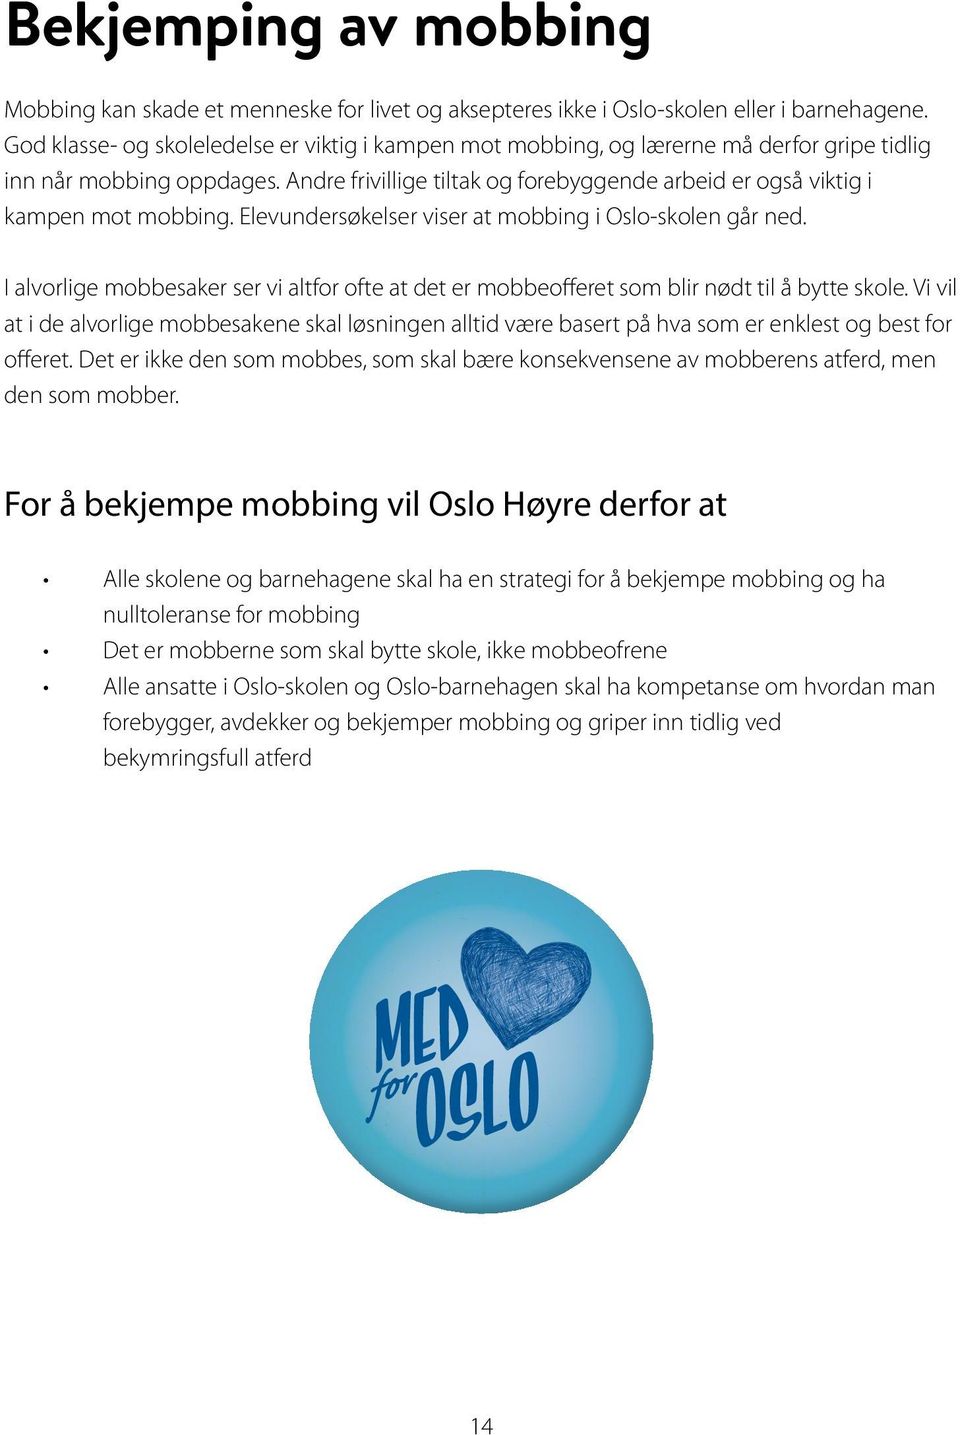 Andre frivillige tiltak og forebyggende arbeid er også viktig i kampen mot mobbing. Elevundersøkelser viser at mobbing i Oslo-skolen går ned.